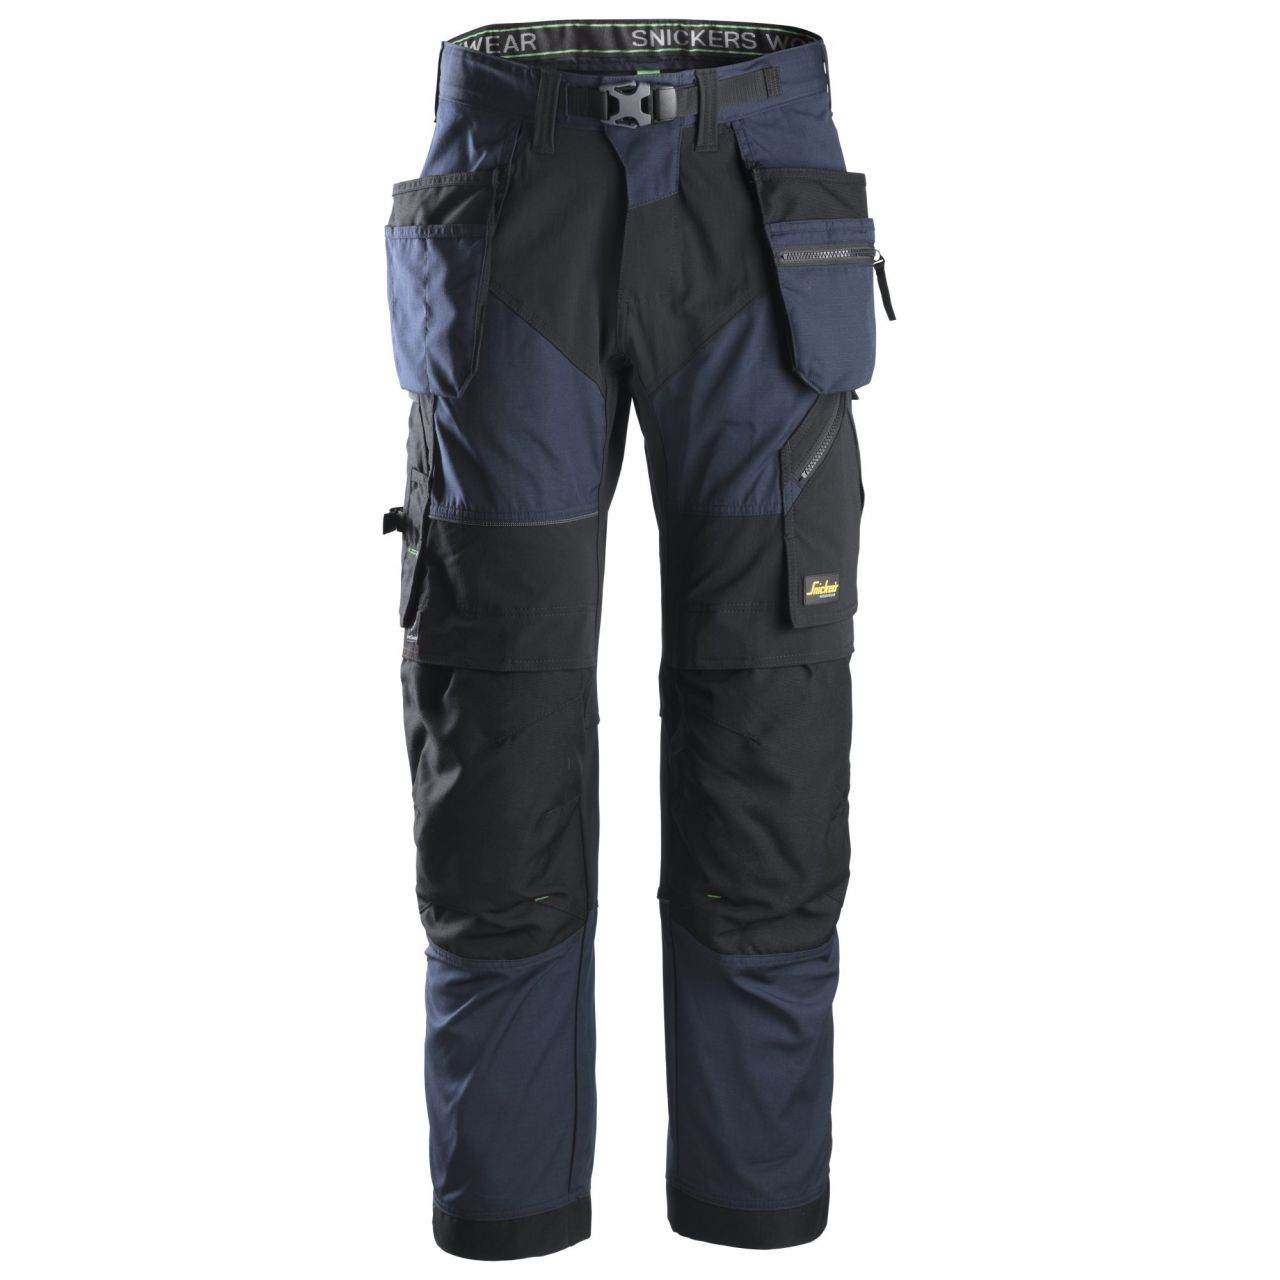 6902 Pantalón largo FlexiWork+ con bolsillos flotantes azul marino-negro talla 46